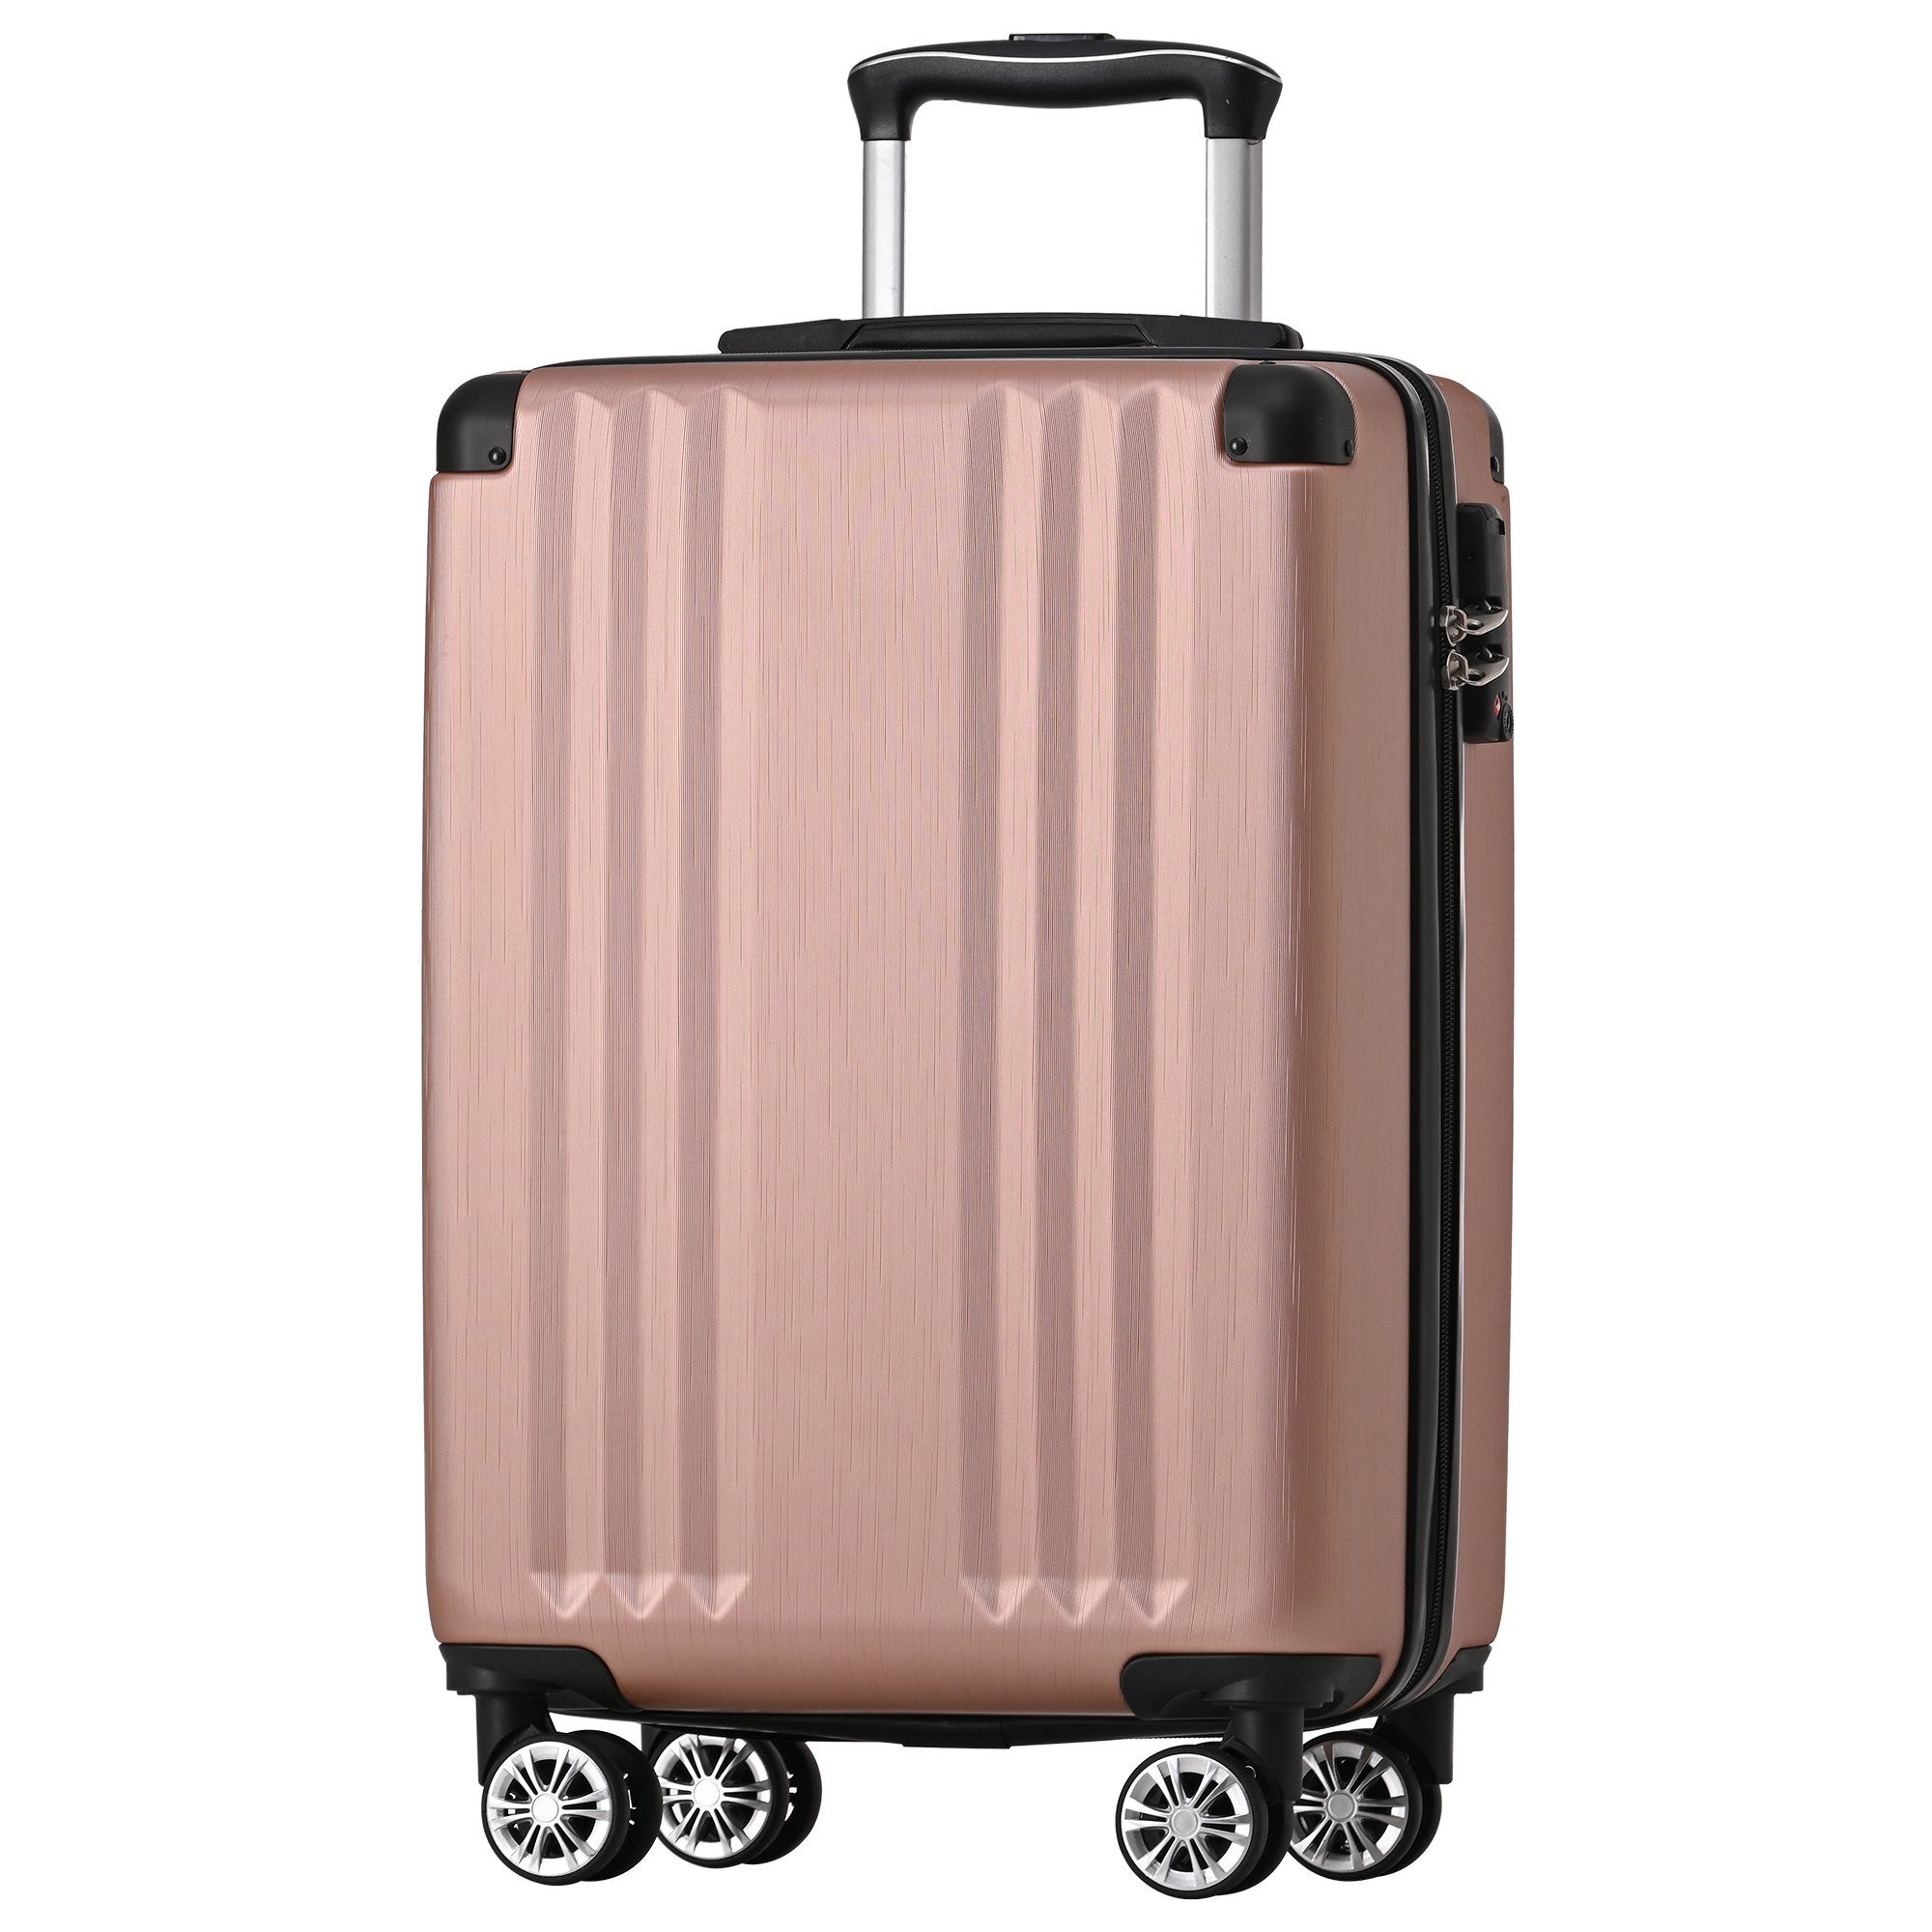 Ulife Handgepäck-Trolley Reisekoffer ABS-Material, TSA Zollschloss, 4 Rollen, M-Größe:56.5*37.5*22.5 Pink